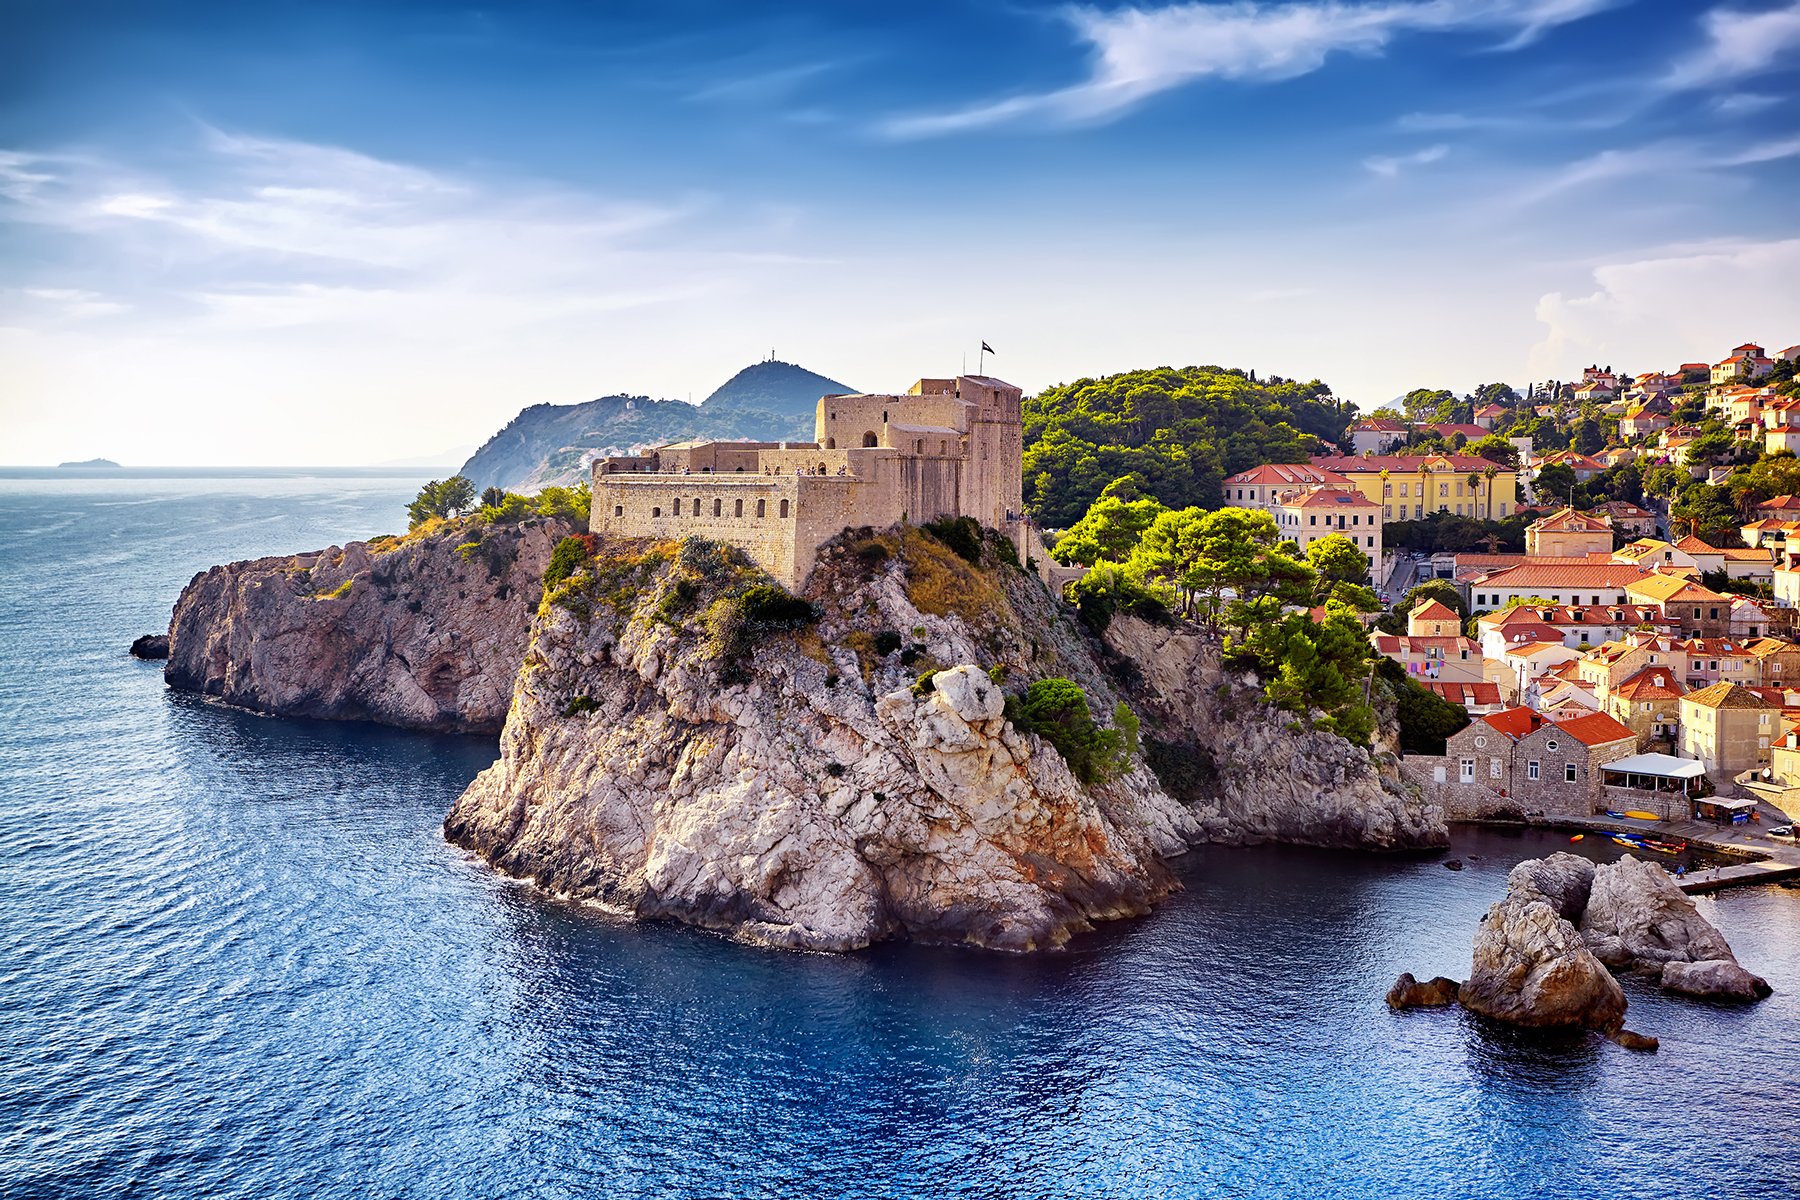 Dubrovnik - Fortresses